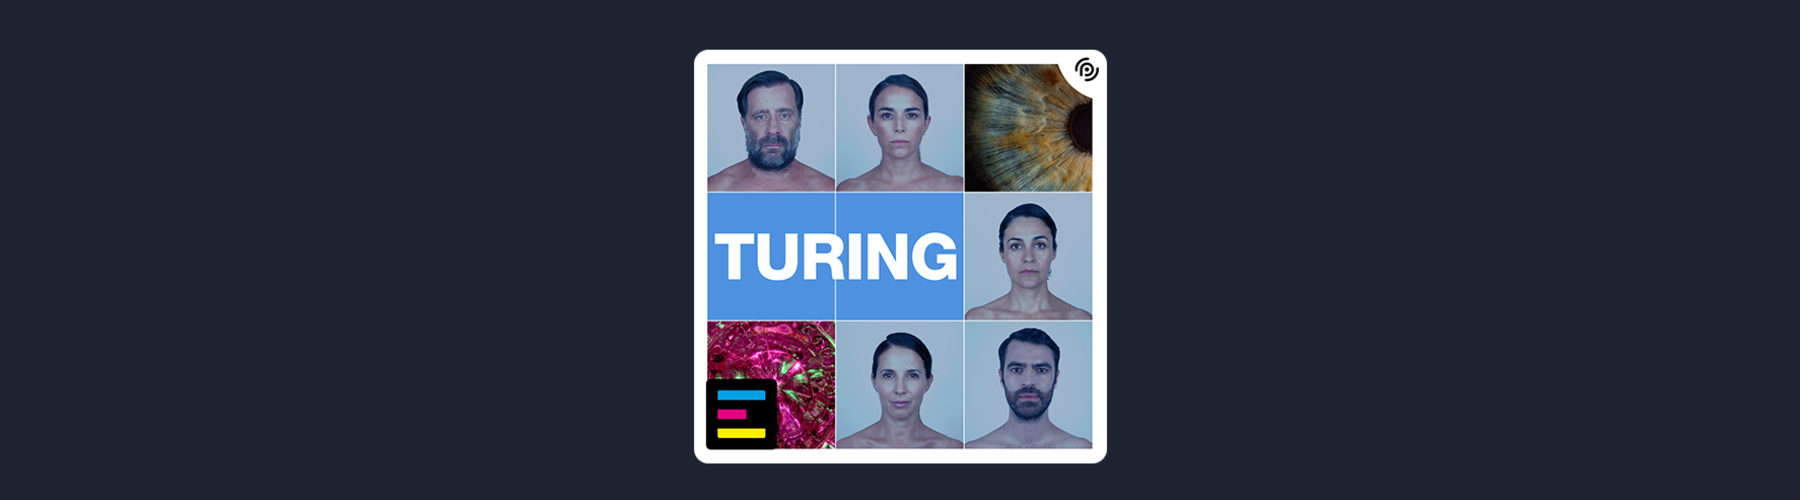 Turing audio ficcion 